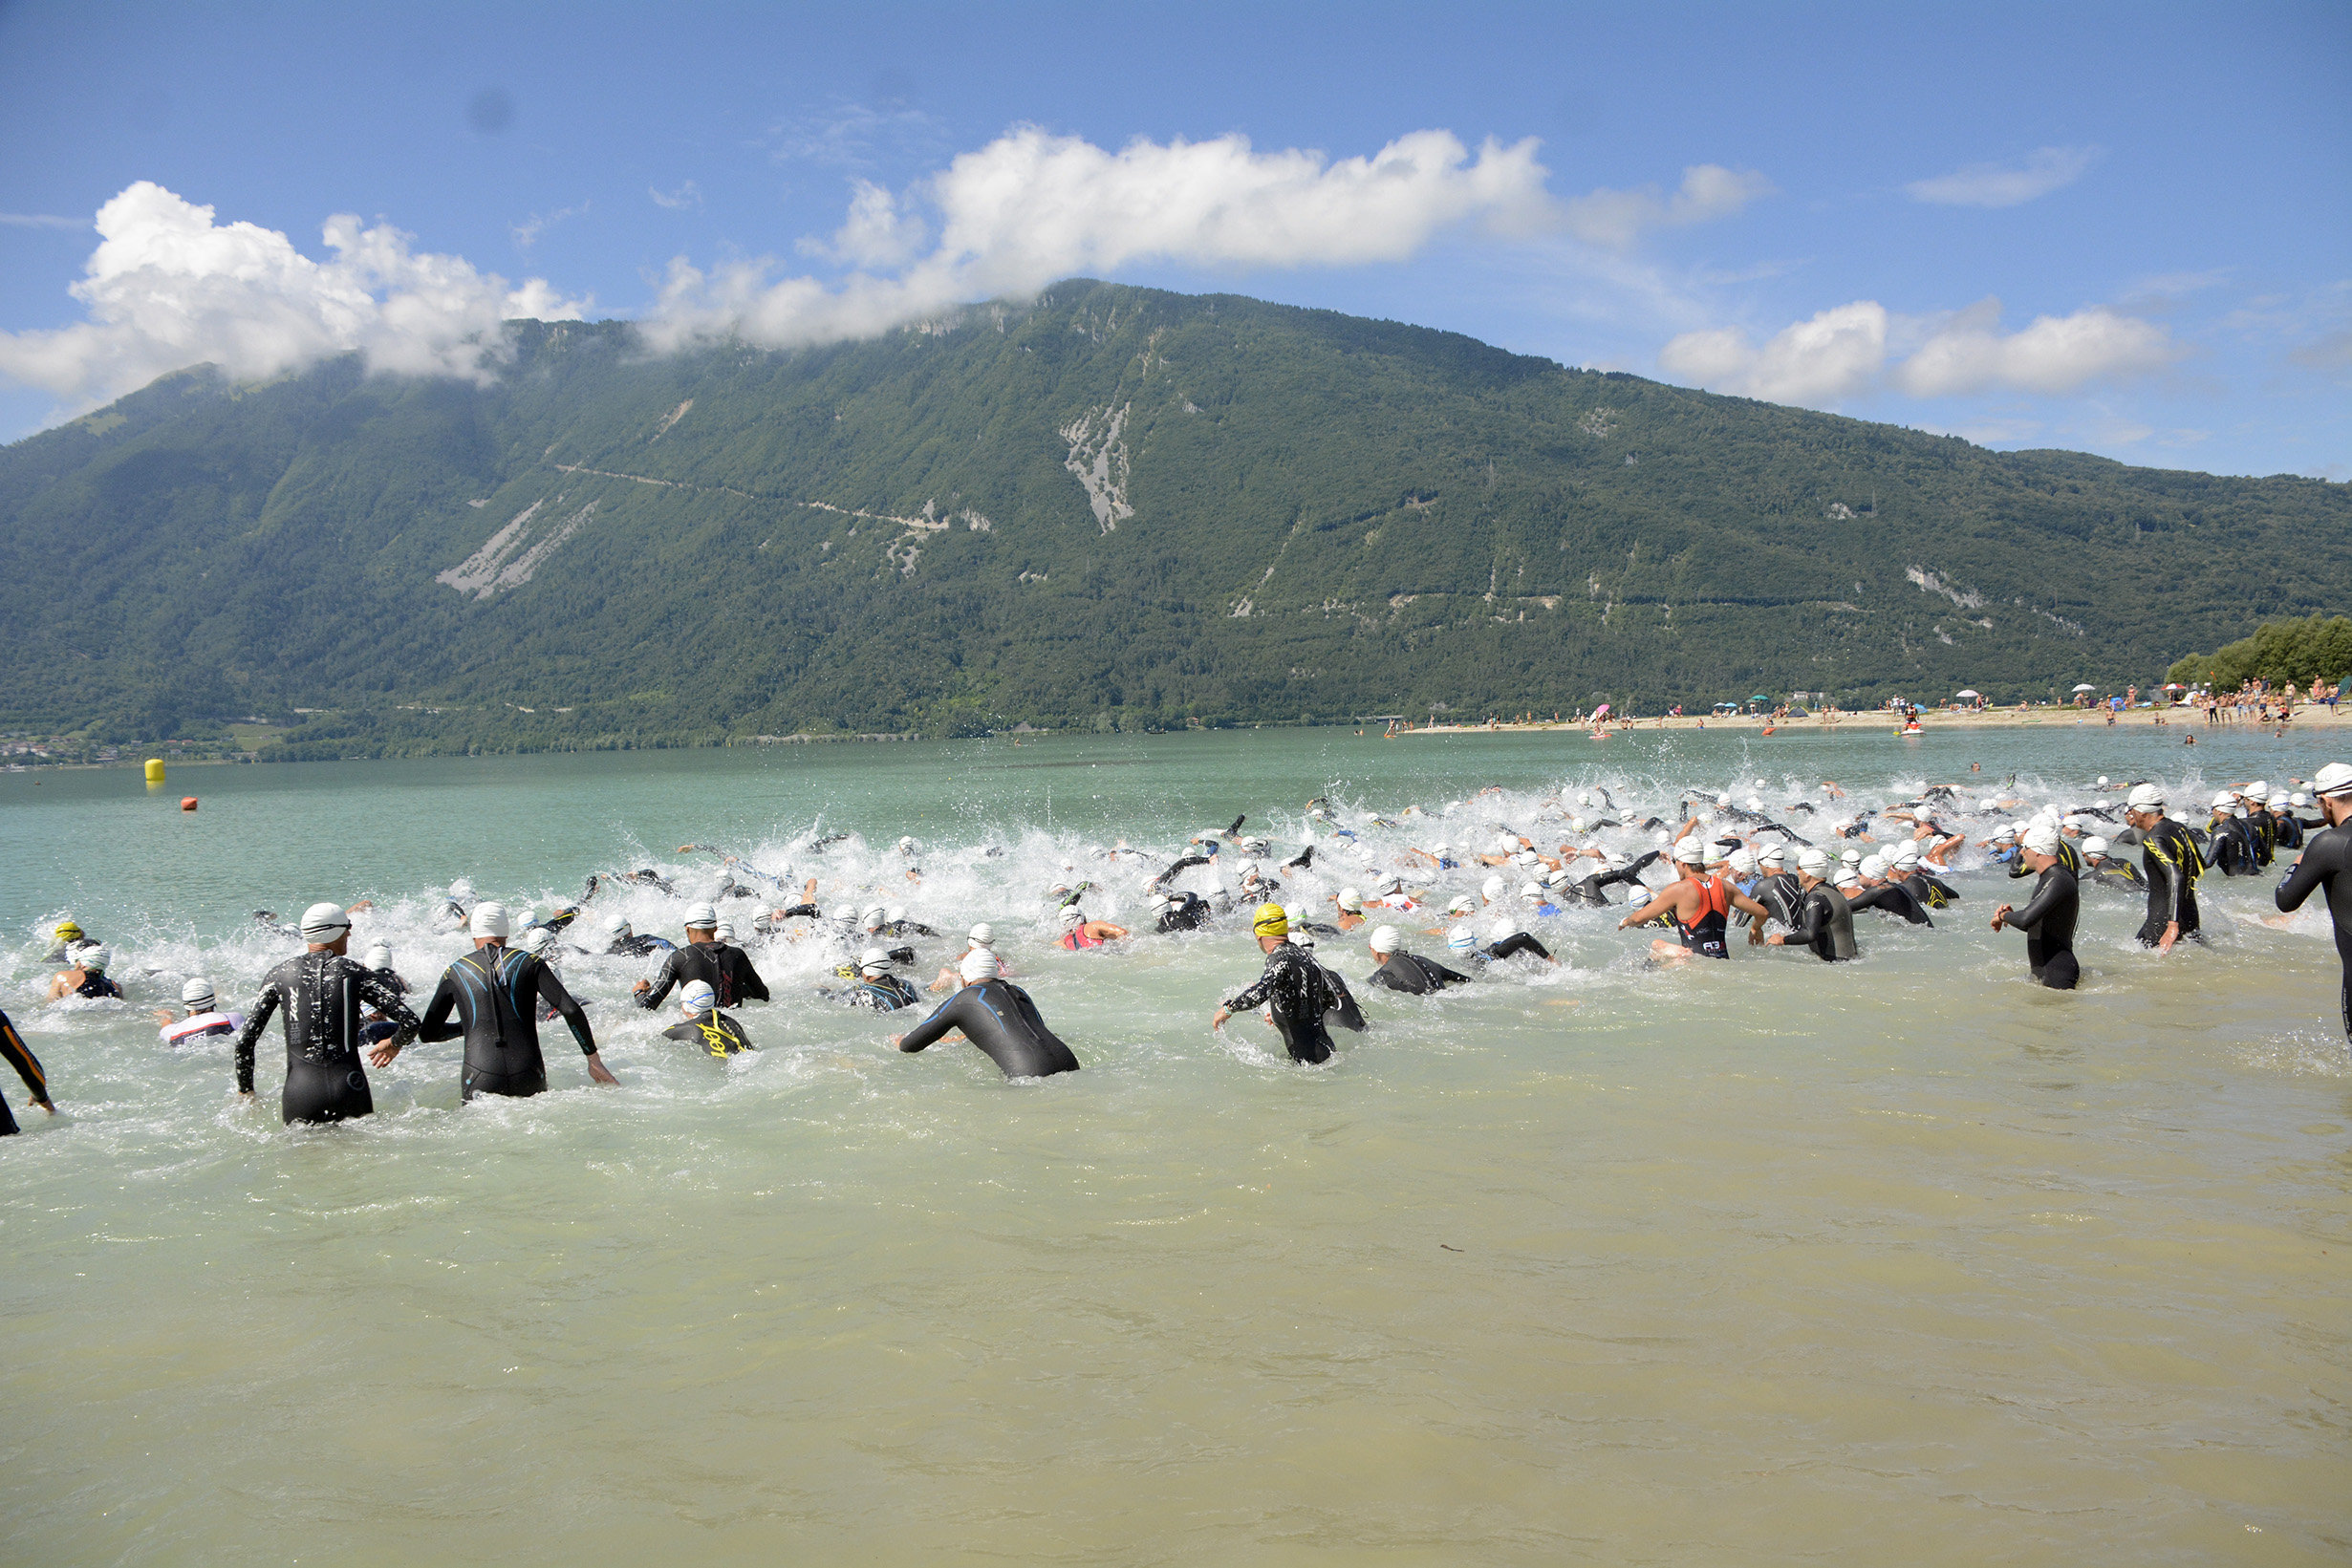 Alpago Triathlon da record: oltre 900 atleti-gara nel weekend sul lago di Santa Croce